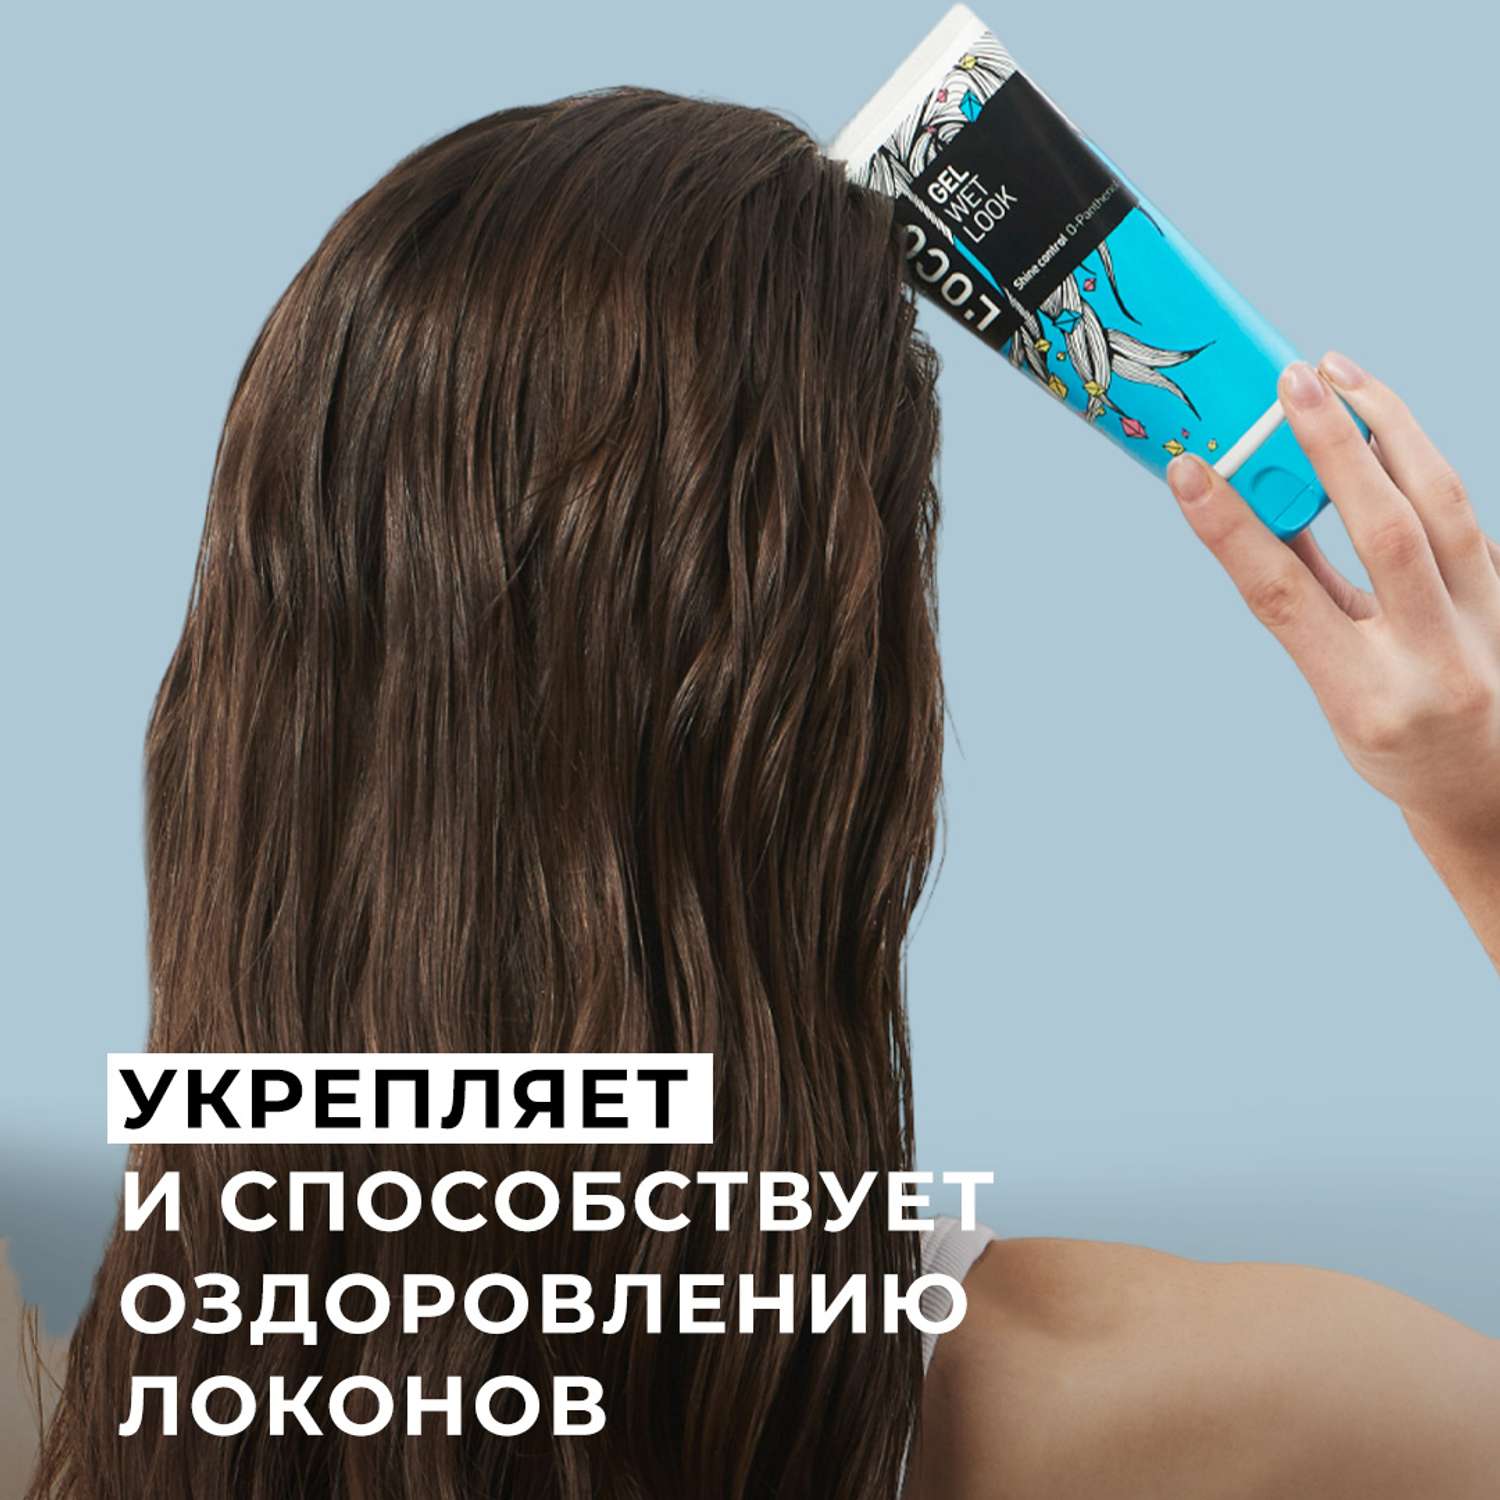 Гель для укладки lOCO с эффектом мокрых волос - фото 5